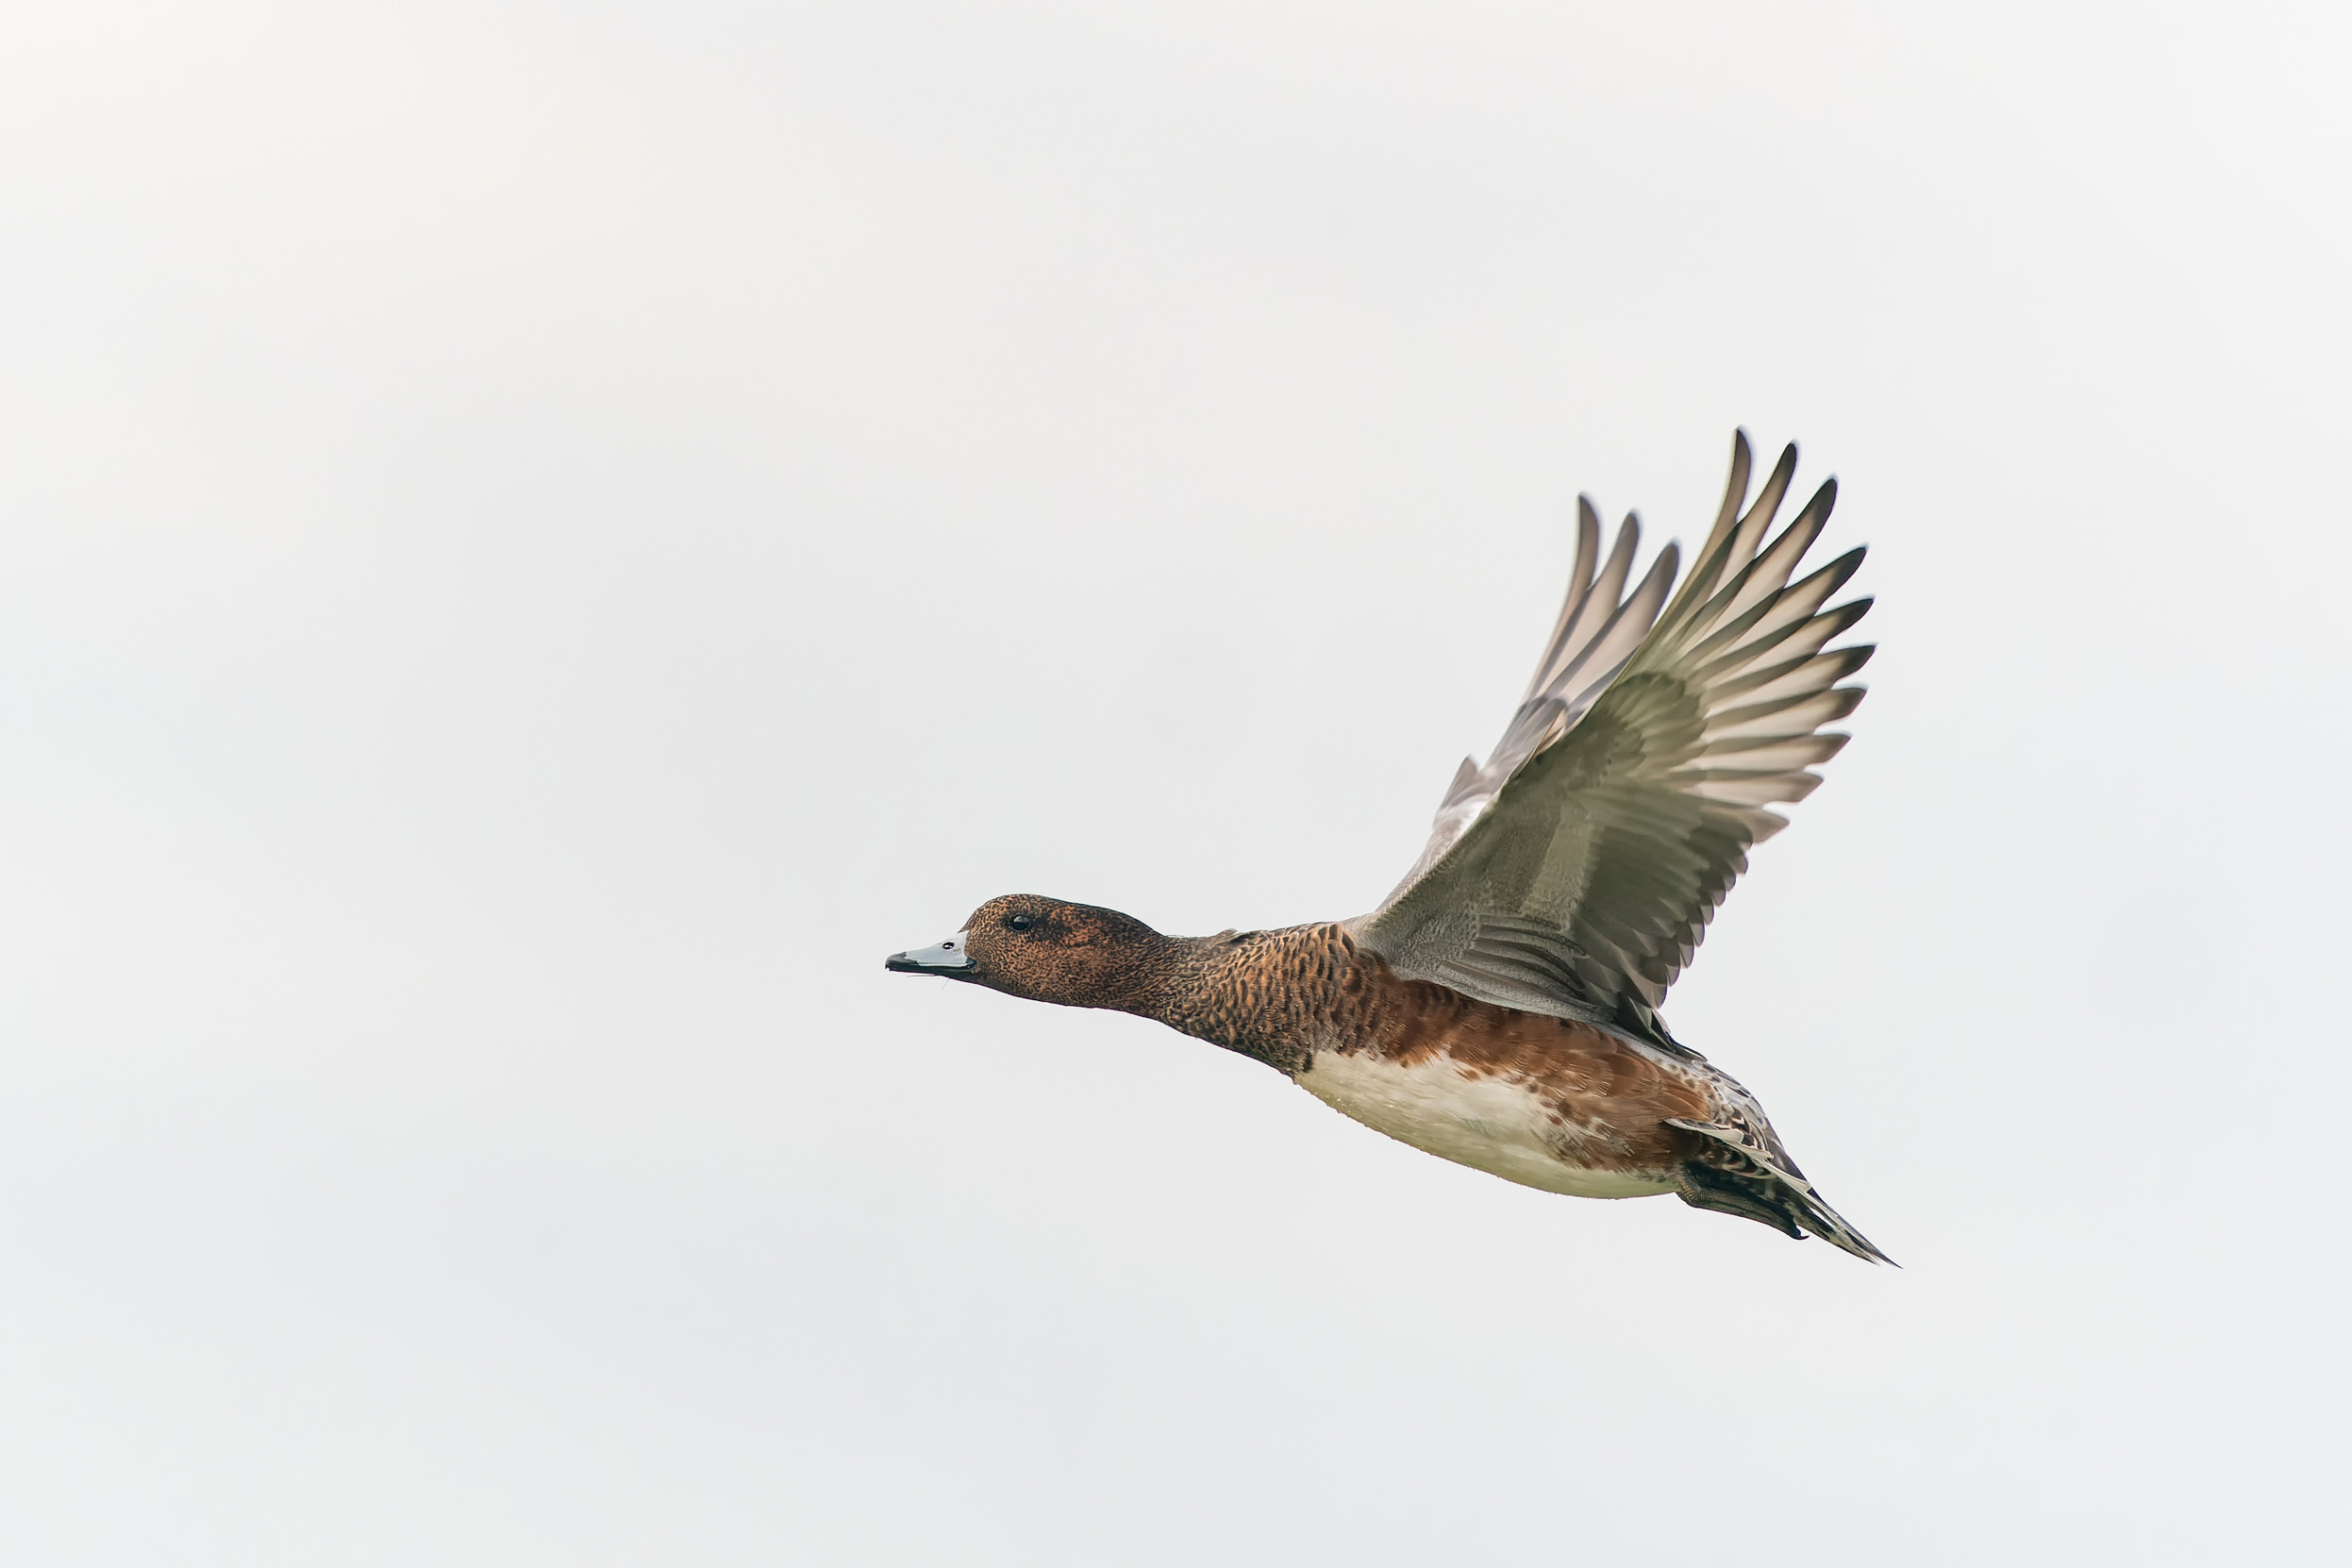 Female Wigeon in flight